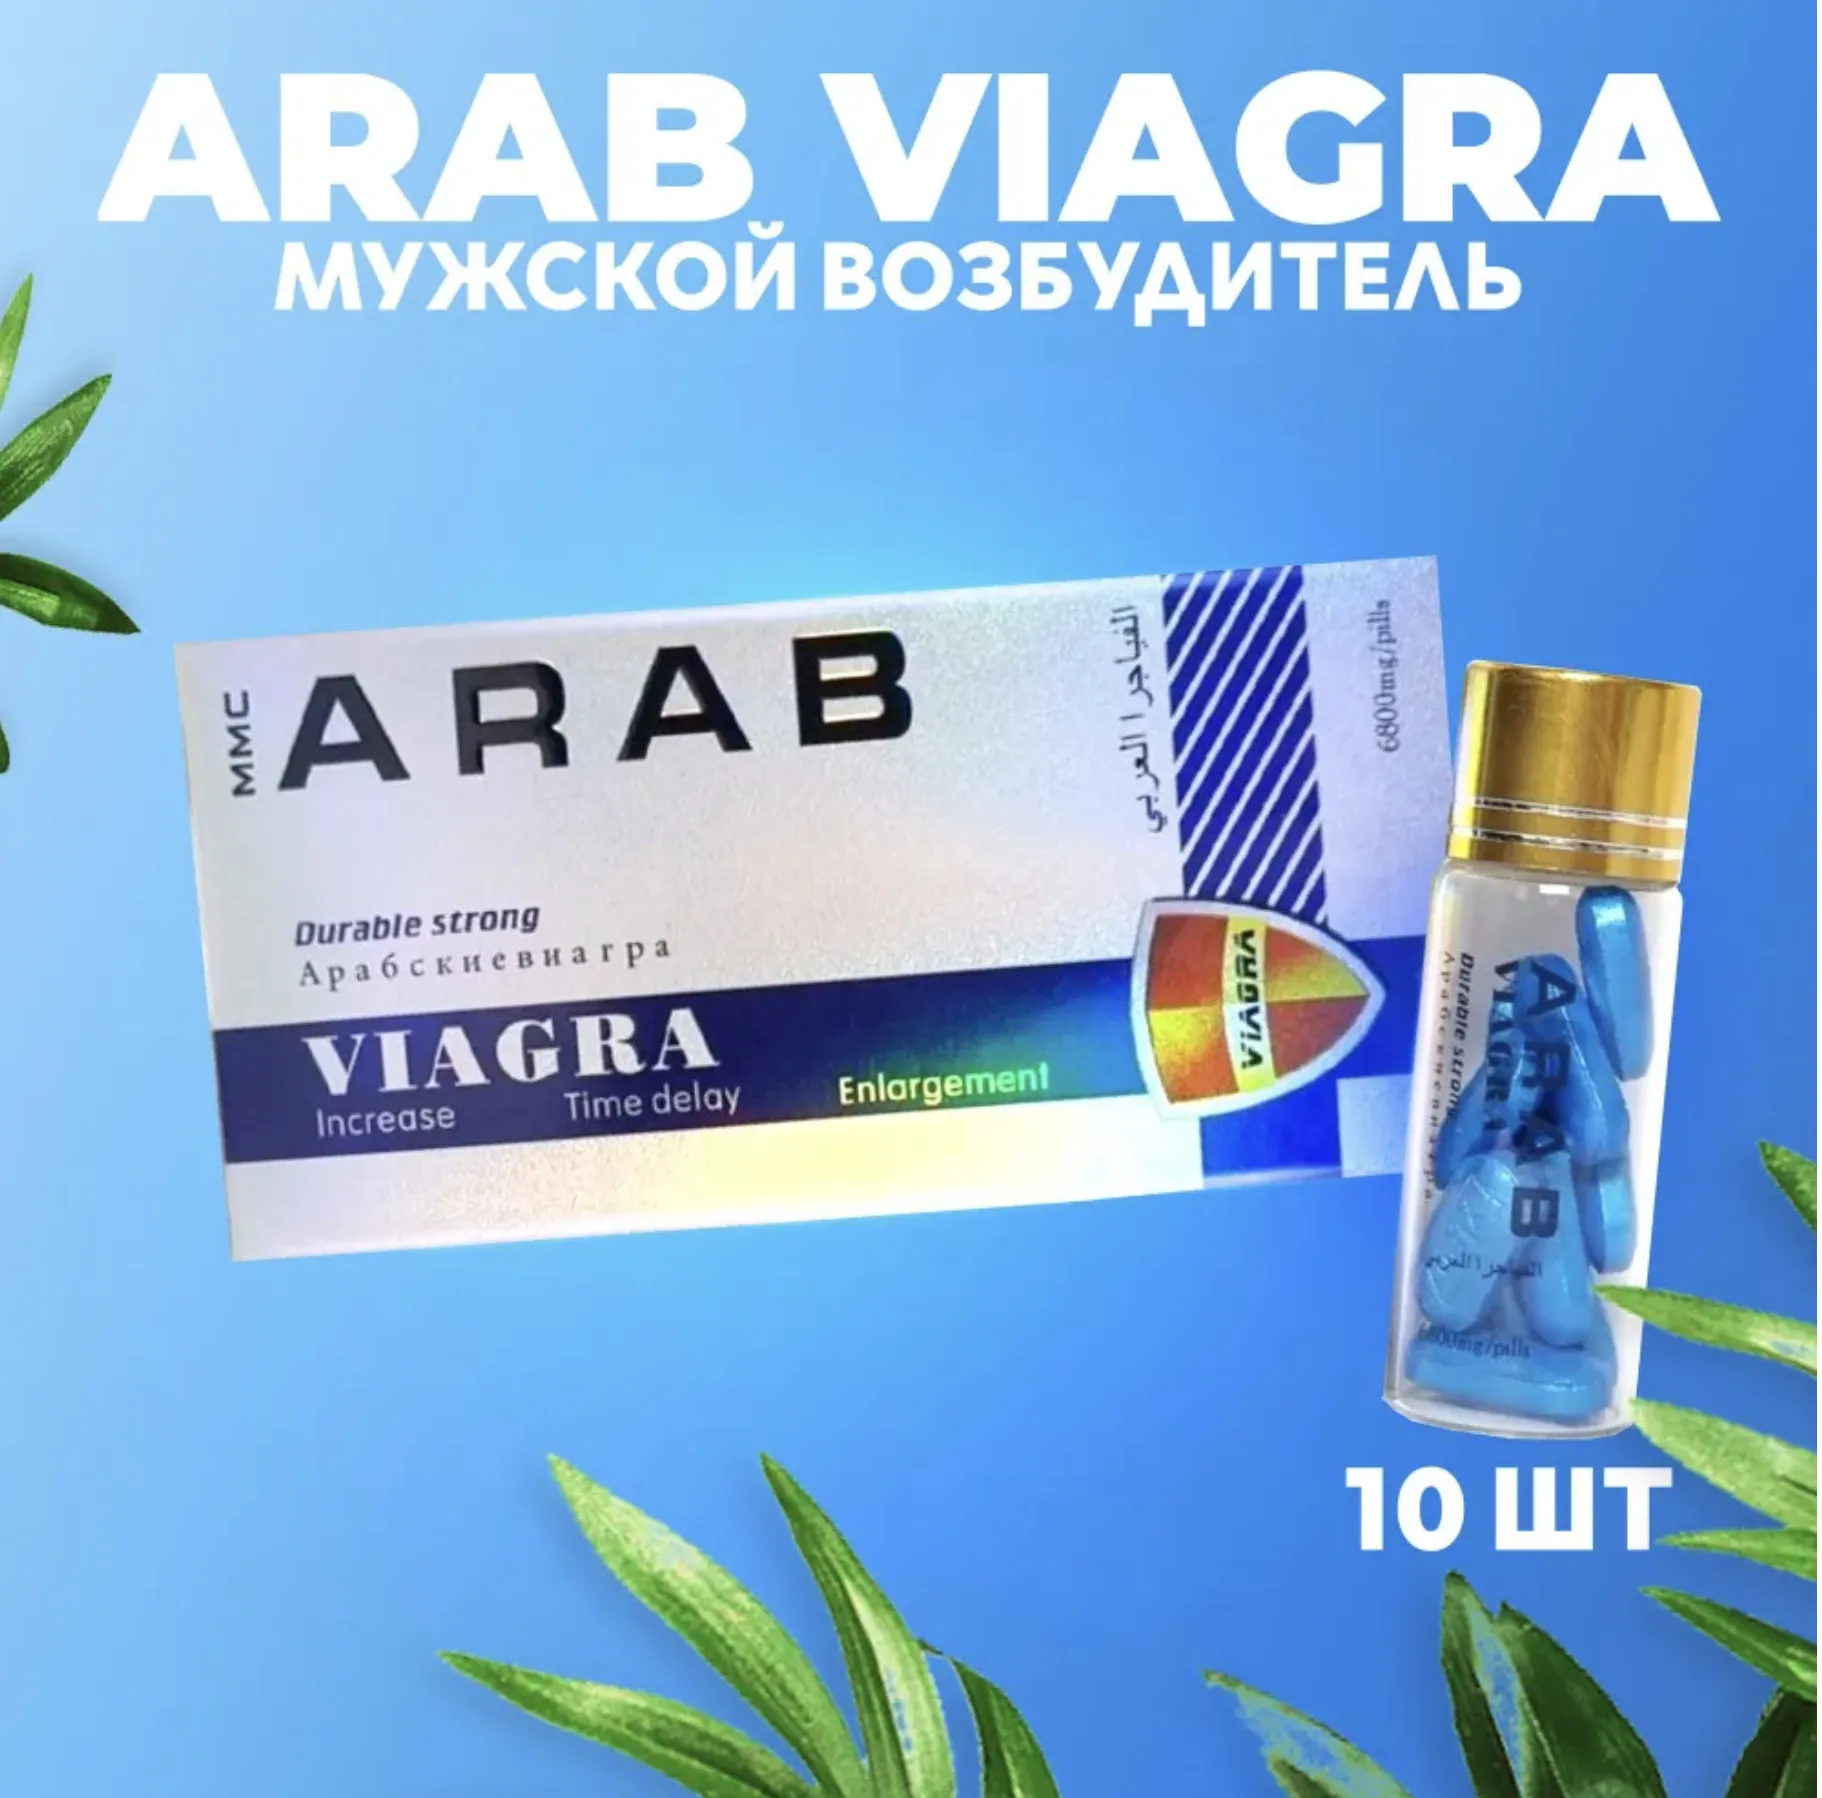 "Arab viagra"erkak qo'zg'atuvchisi. Potentsial uchun ogohlantiruvchi vosita. 10 tabletka#1